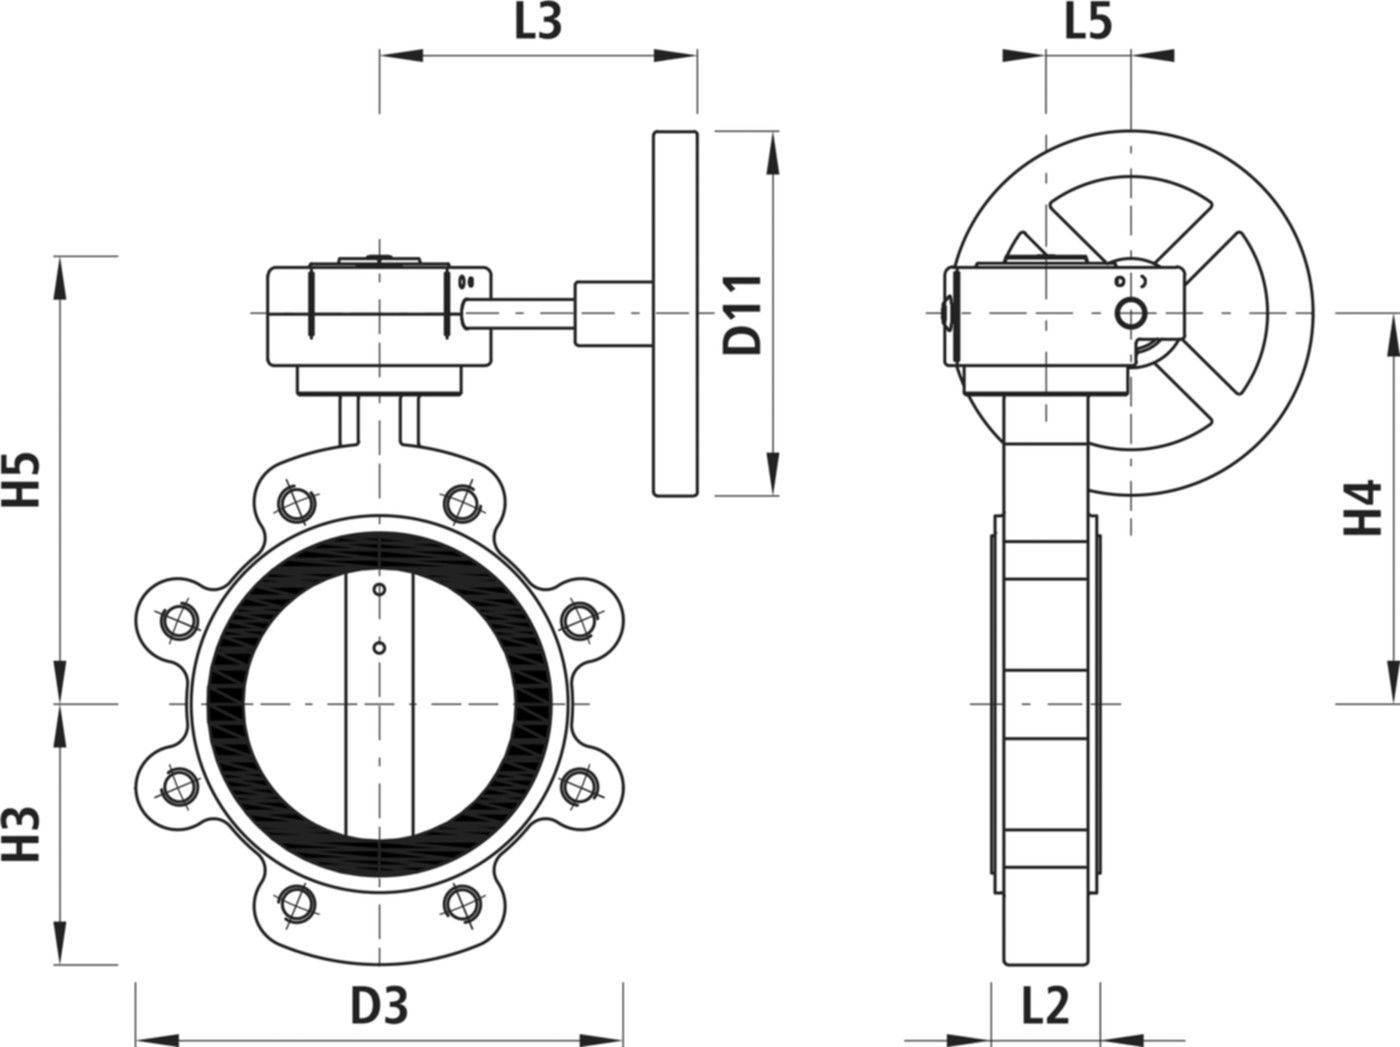 Absperrklappe mit Getriebe Typ LI 9943 DN 200 PN 16 - Hawle Absperrklappen